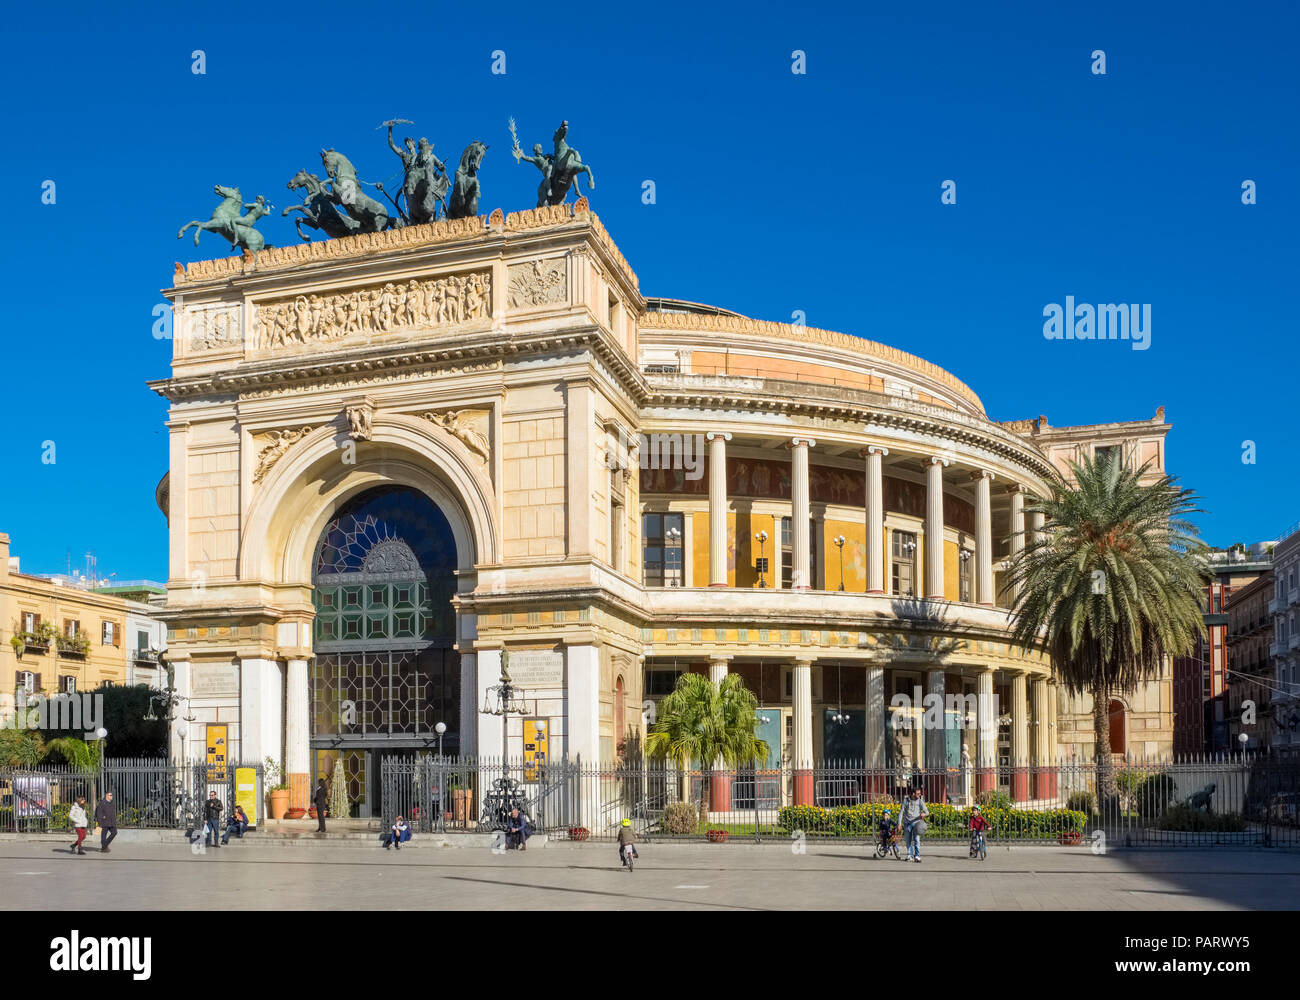 Le théâtre Politeama et Teatro Politeama façade, Palerme, Sicile dans la Piazza Politeama avec un quadrige de bronze Banque D'Images